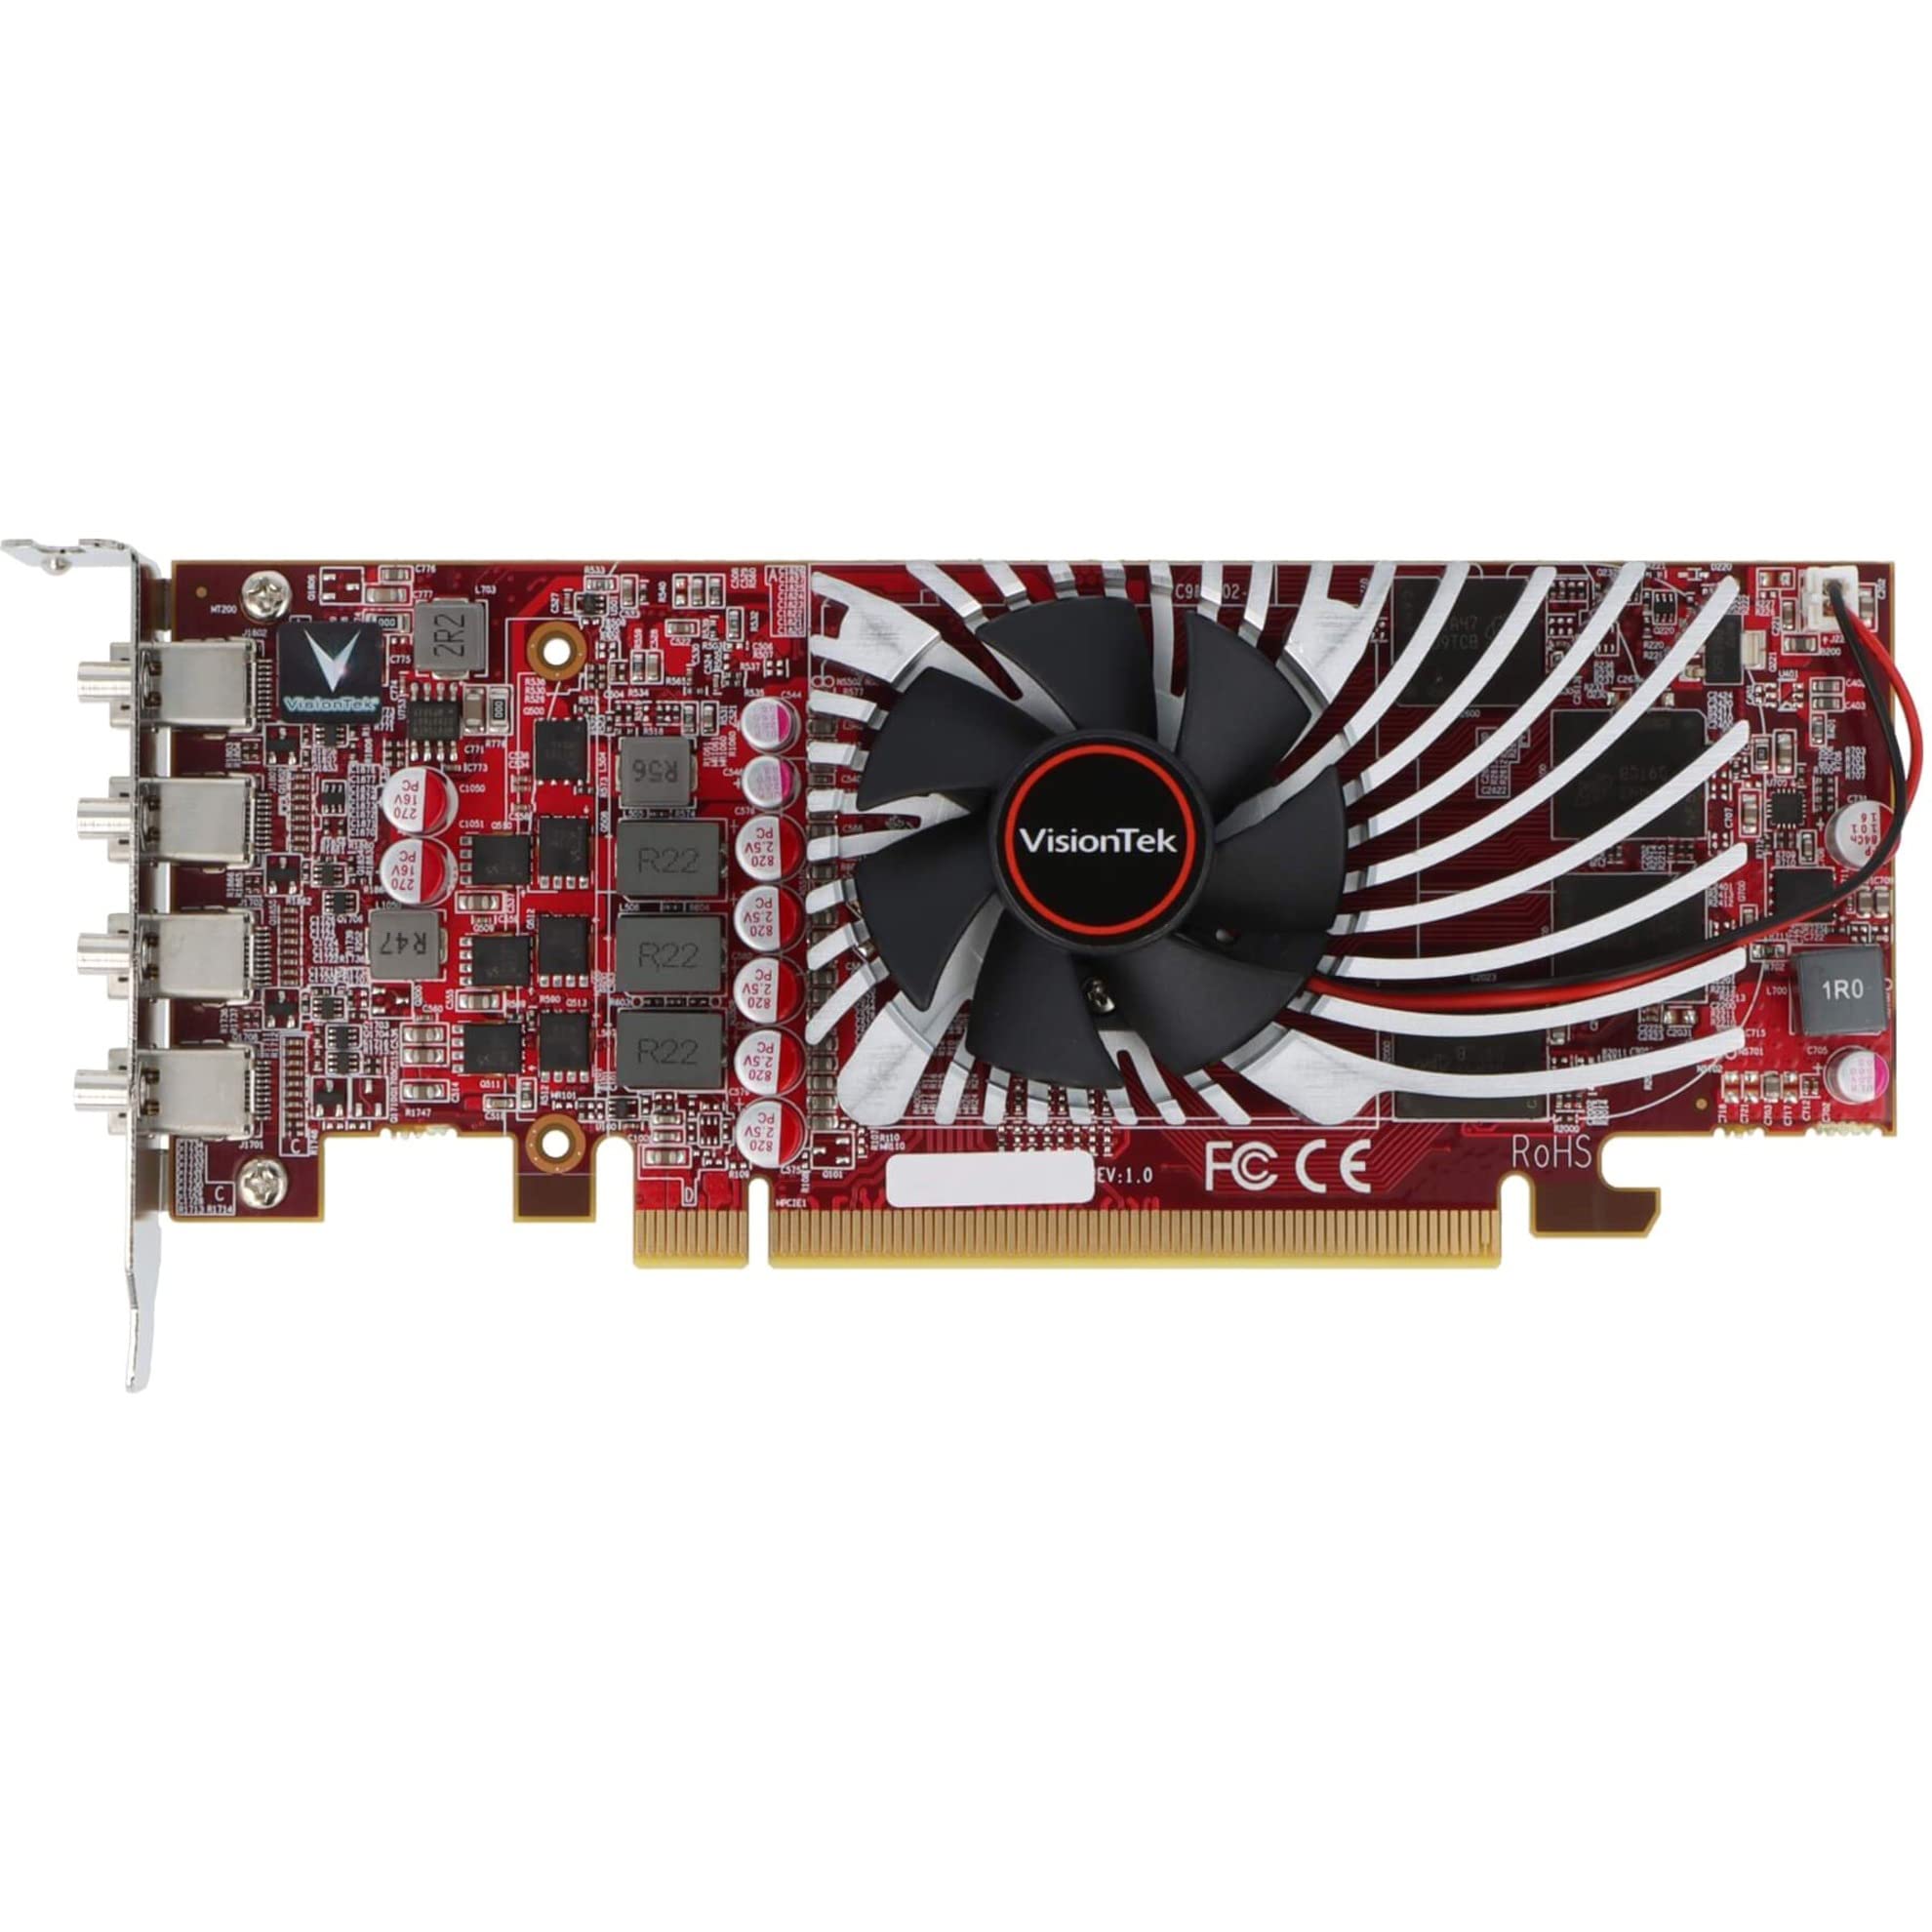 VisionTek AMD Radeon RX 550 グラフィックカード - 2GB GDDR5 - フルハイト